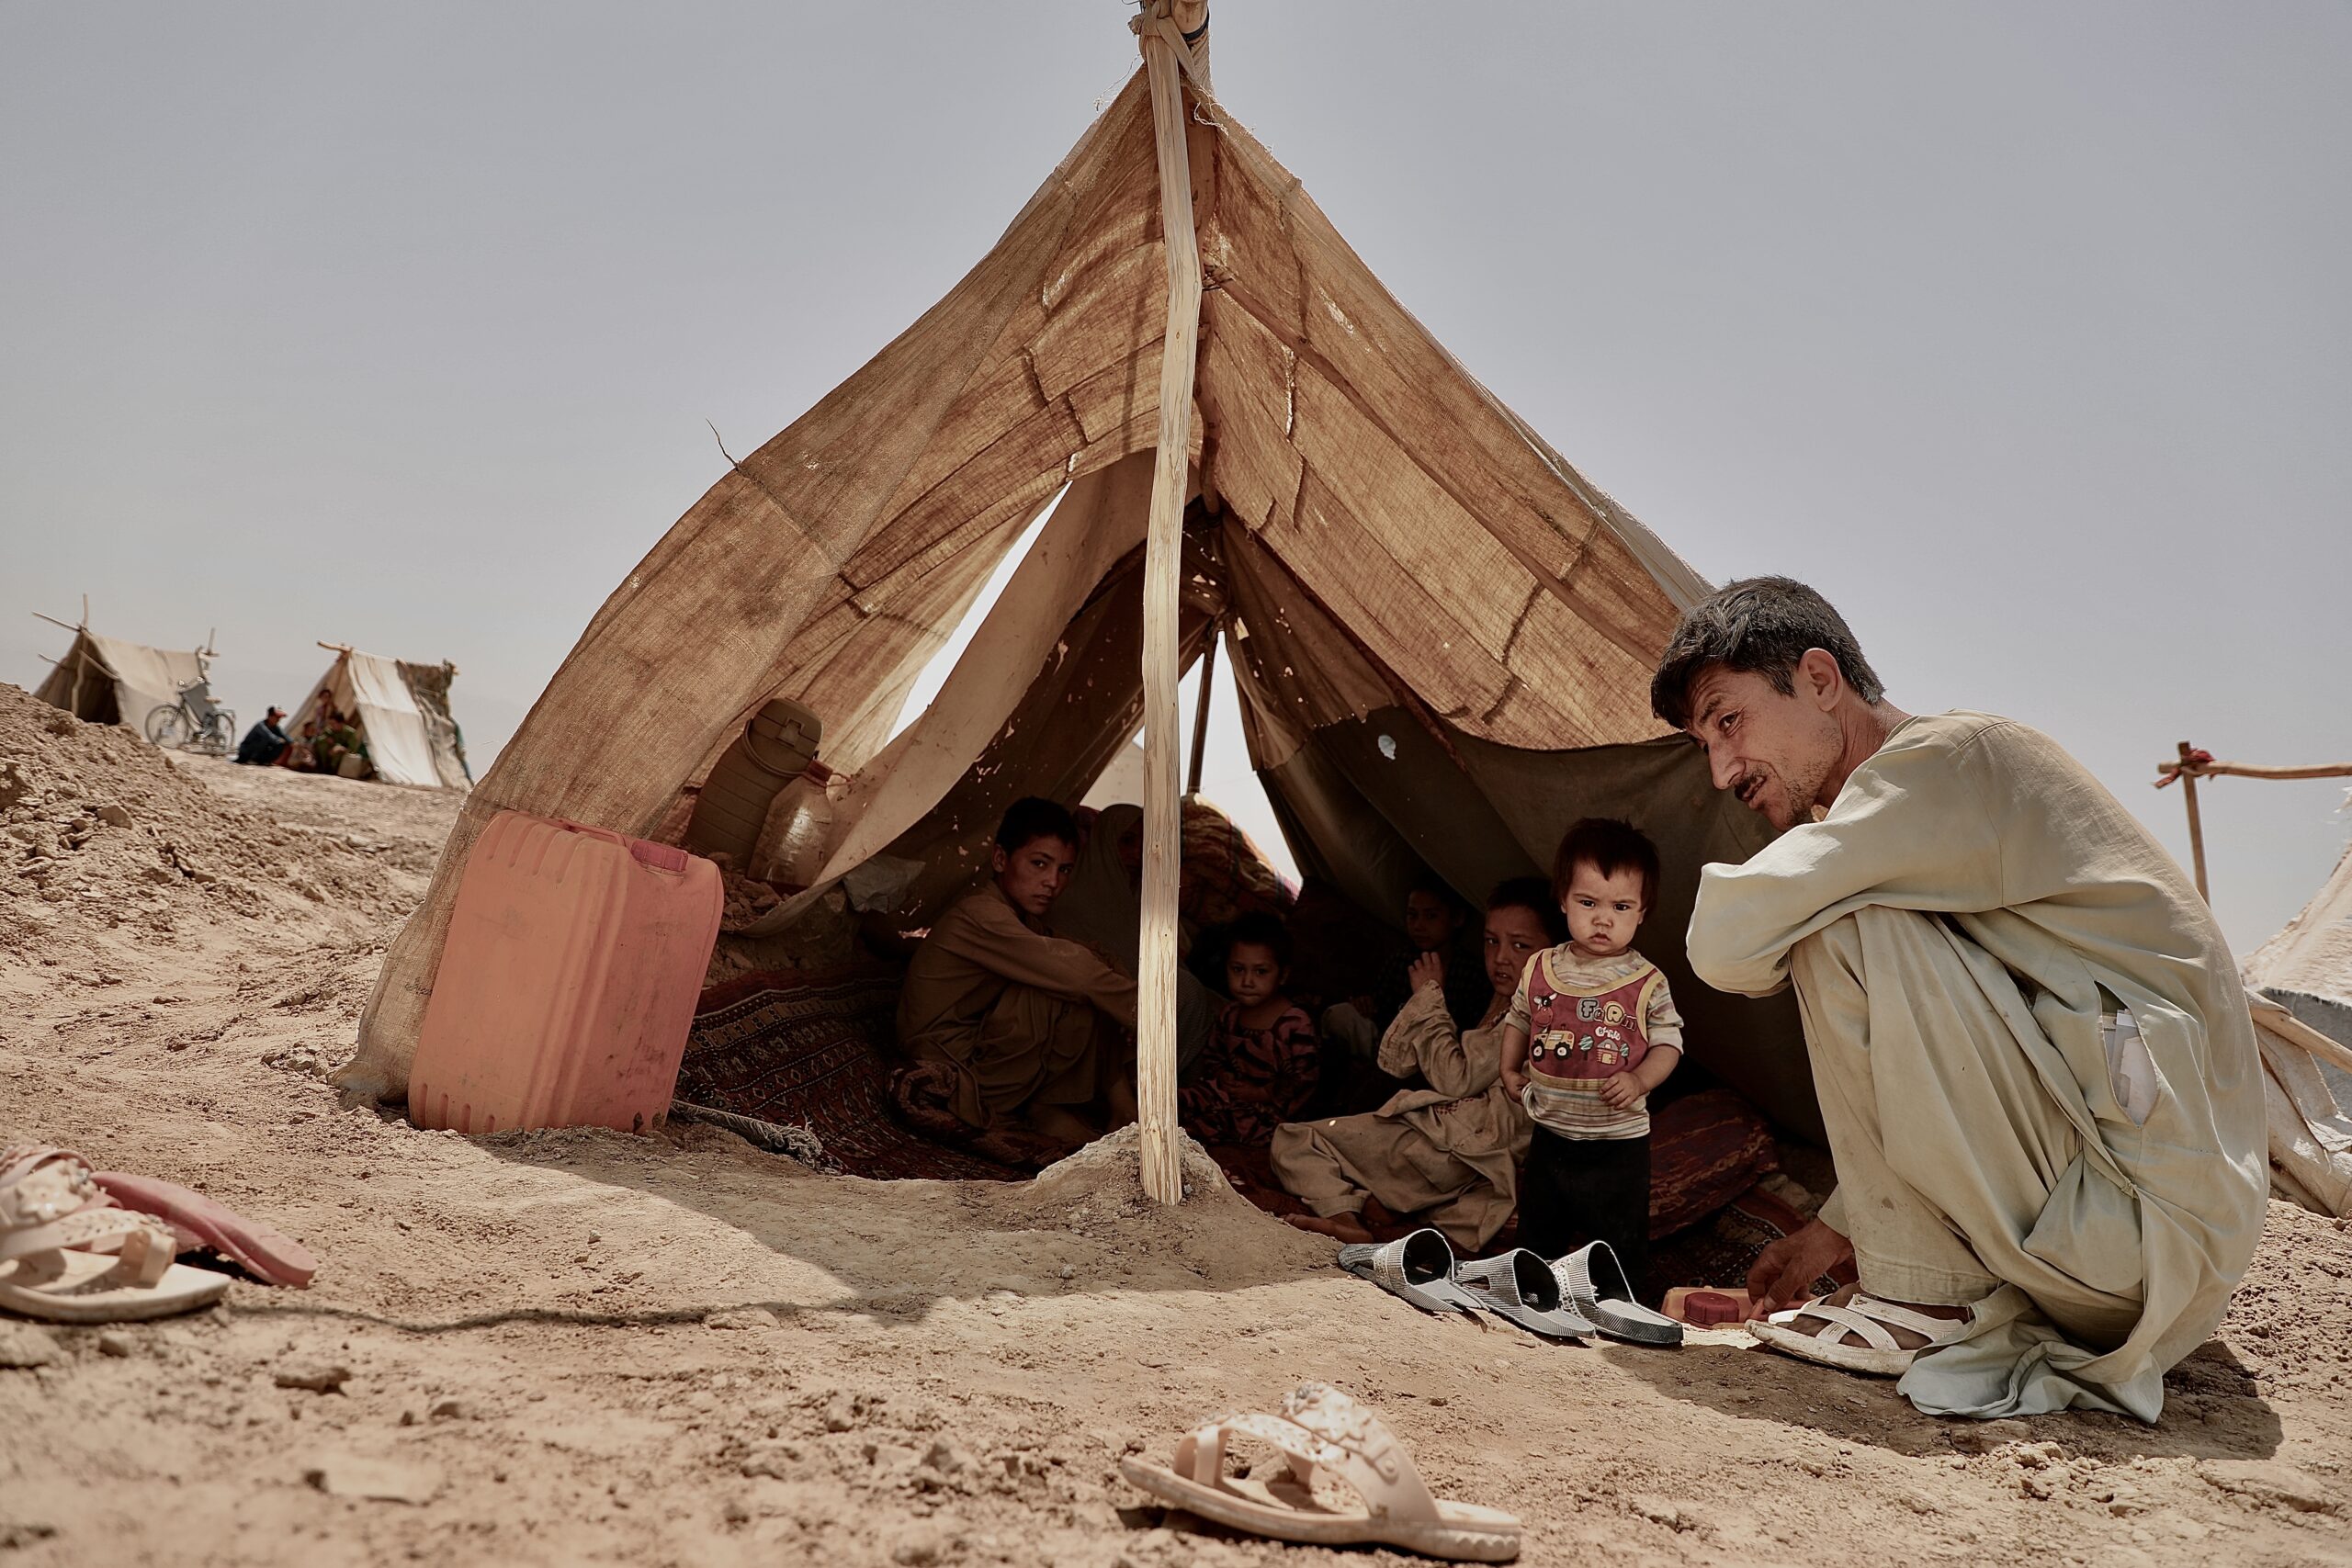 Mohammad Faiz en zijn kinderen, op de vlucht voor het conflict in Afghanistan. © UNHCR/Edris Lutfi